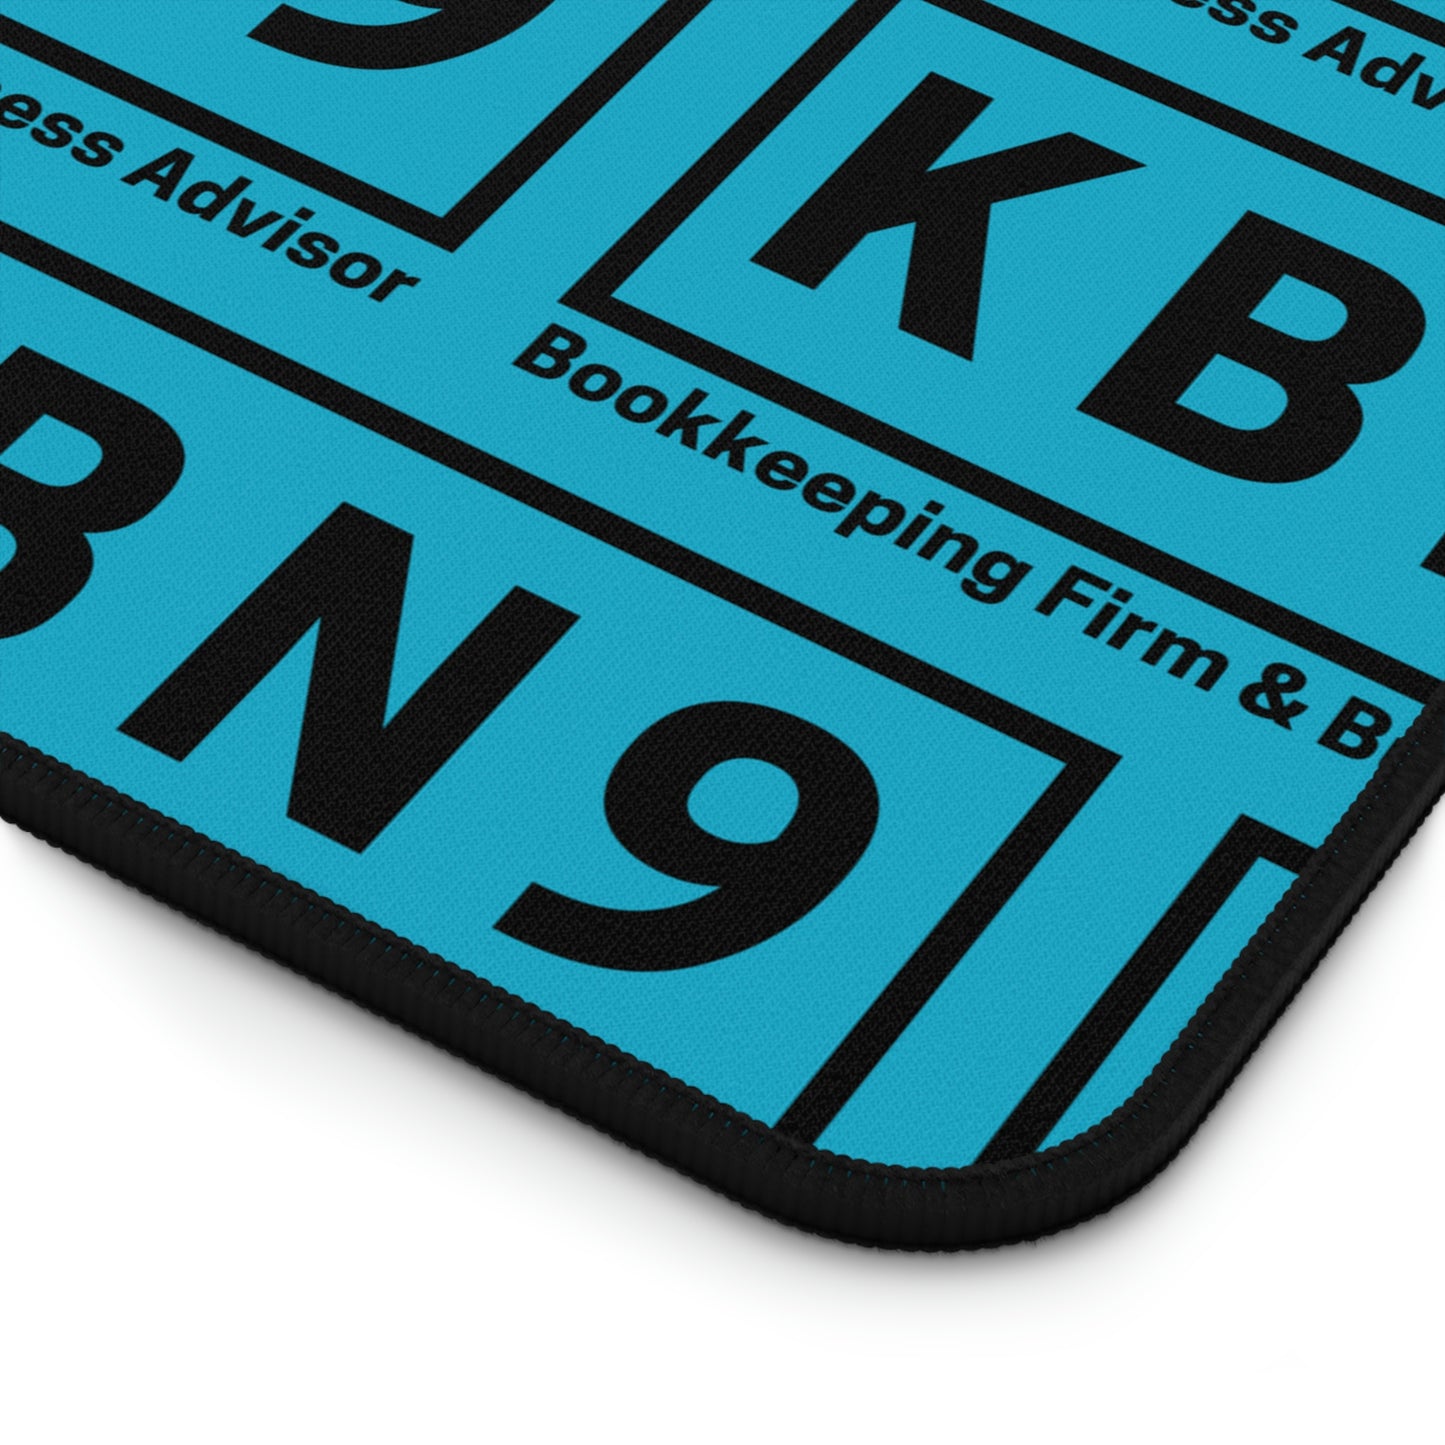 KBN9 - Desk Mat